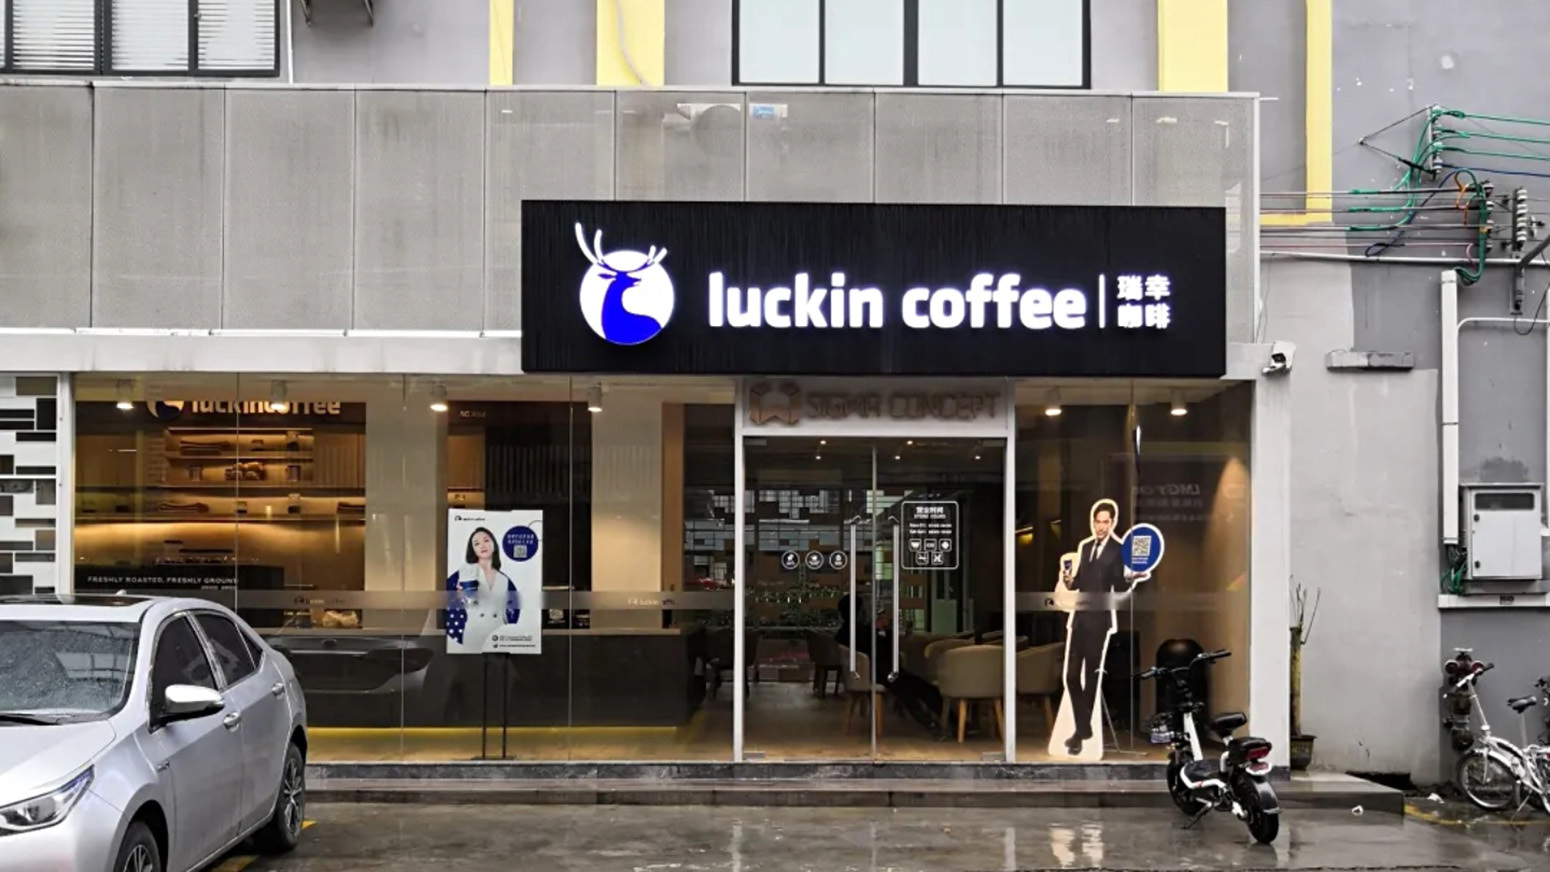 luckin coffee 瑞幸咖啡墙绘合集(一)